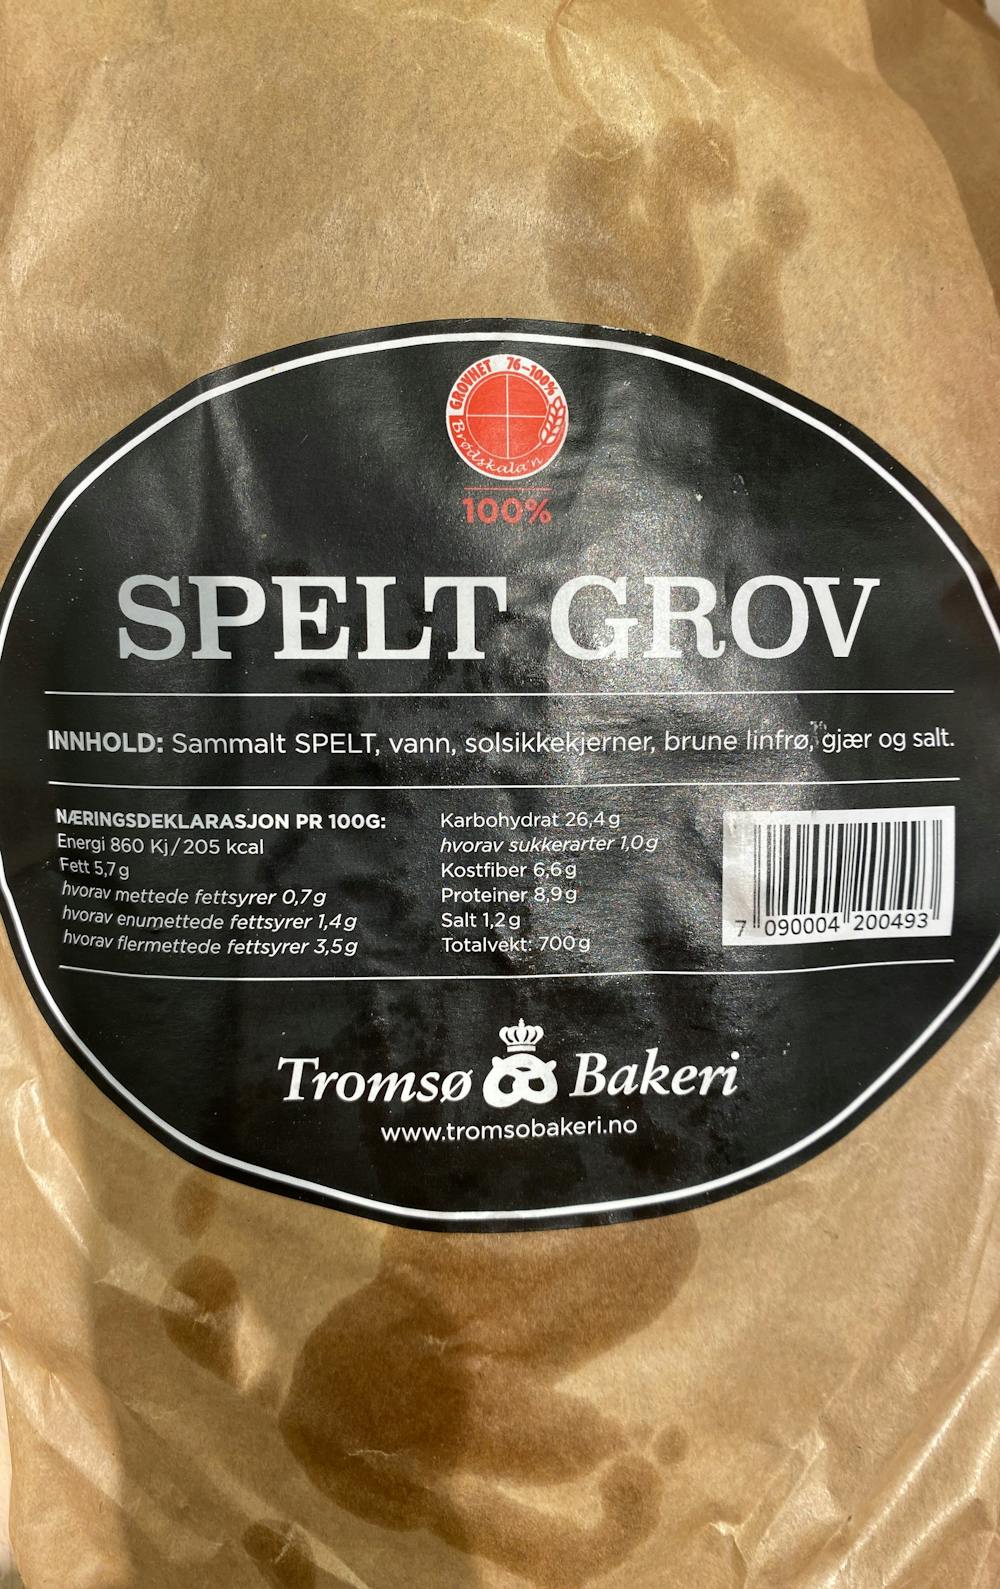 Ingredienslisten til Tromsø bakeri Spelt grov